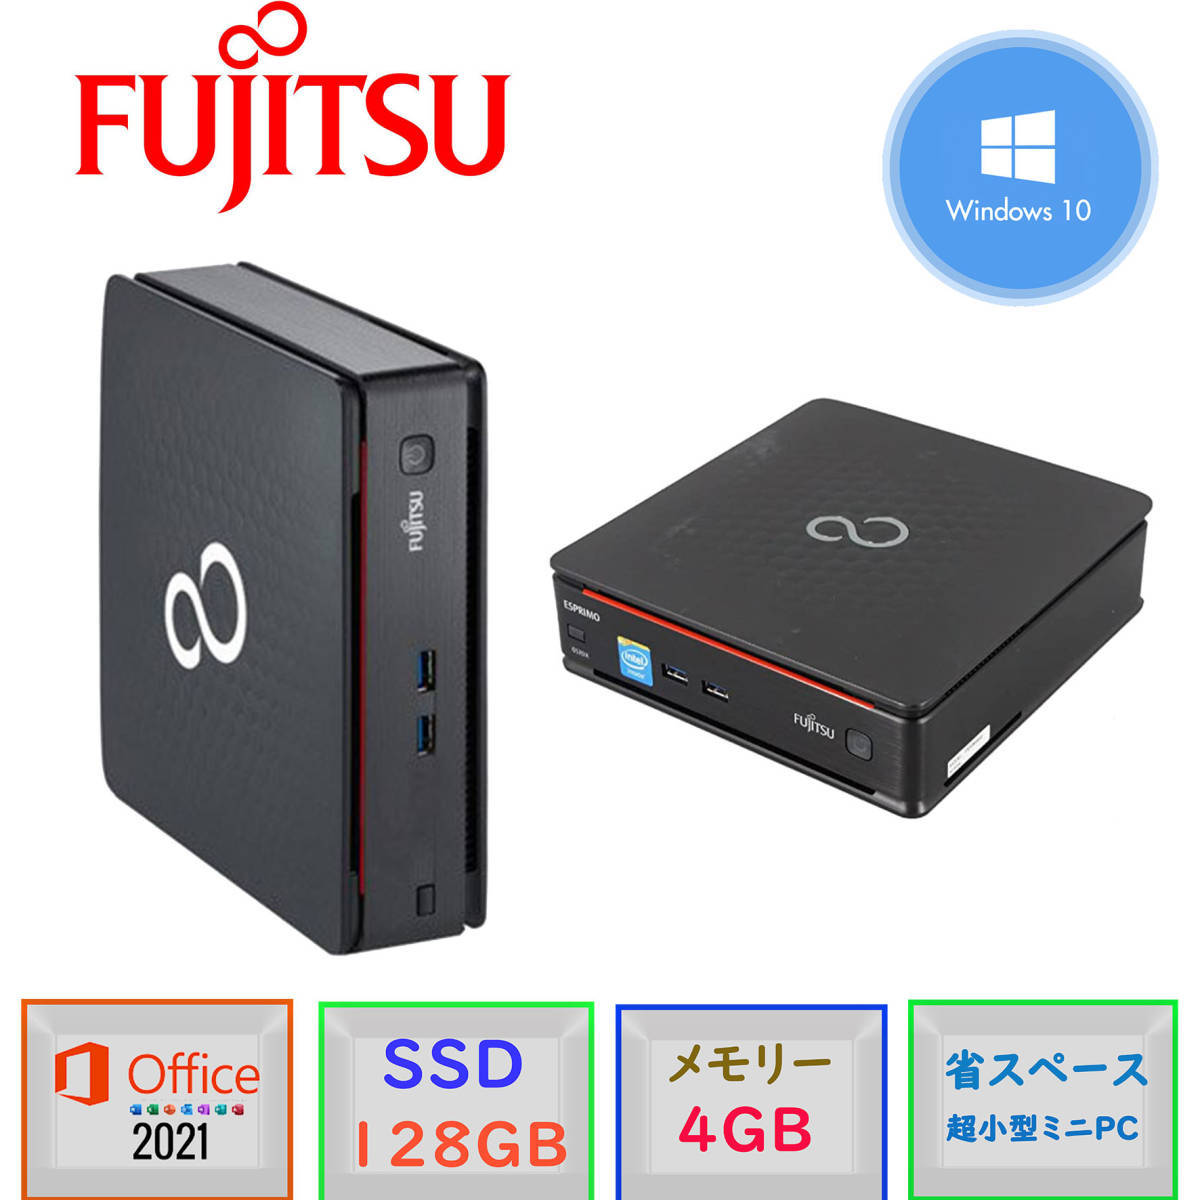 爆速起動 省スペース小型 MINI PC/メモリ4GB/SSD128GB/Win10Pro64bit/Microsoft office2021 FUJITSU ESPRIMO Q520/K /Celeron-G1840T (木)